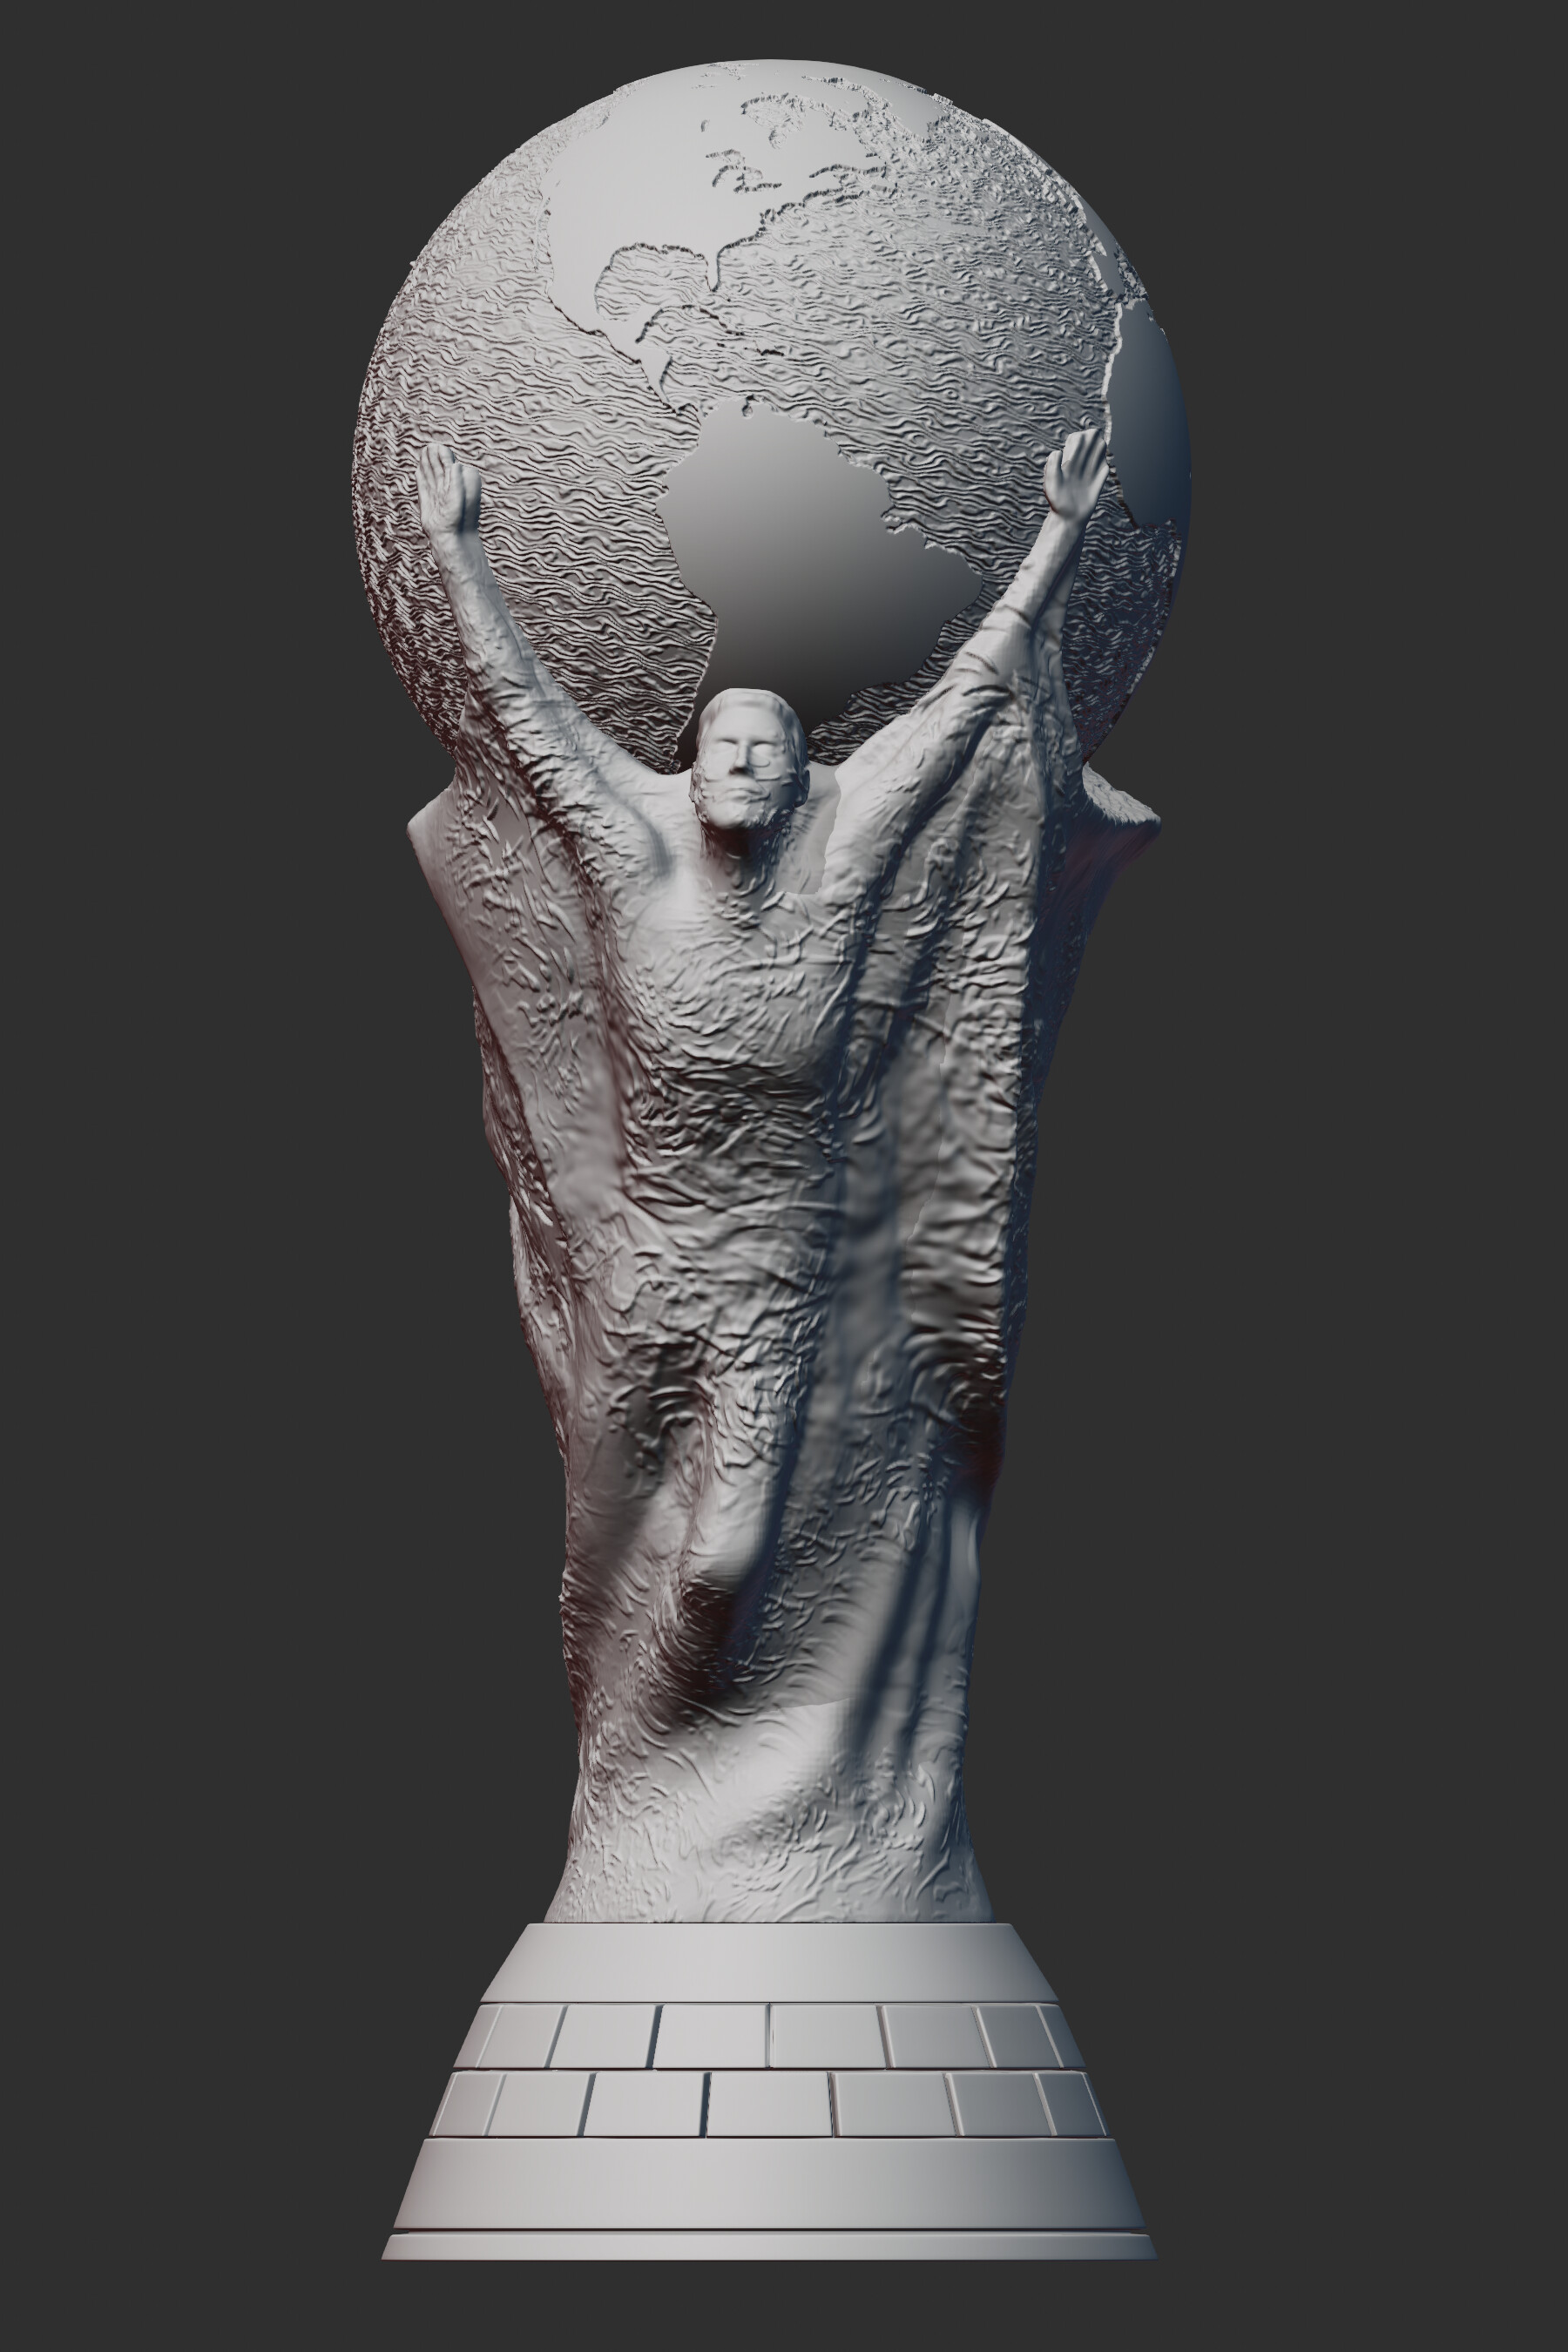 ArtStation - Worlds 2022 Trophy Ward